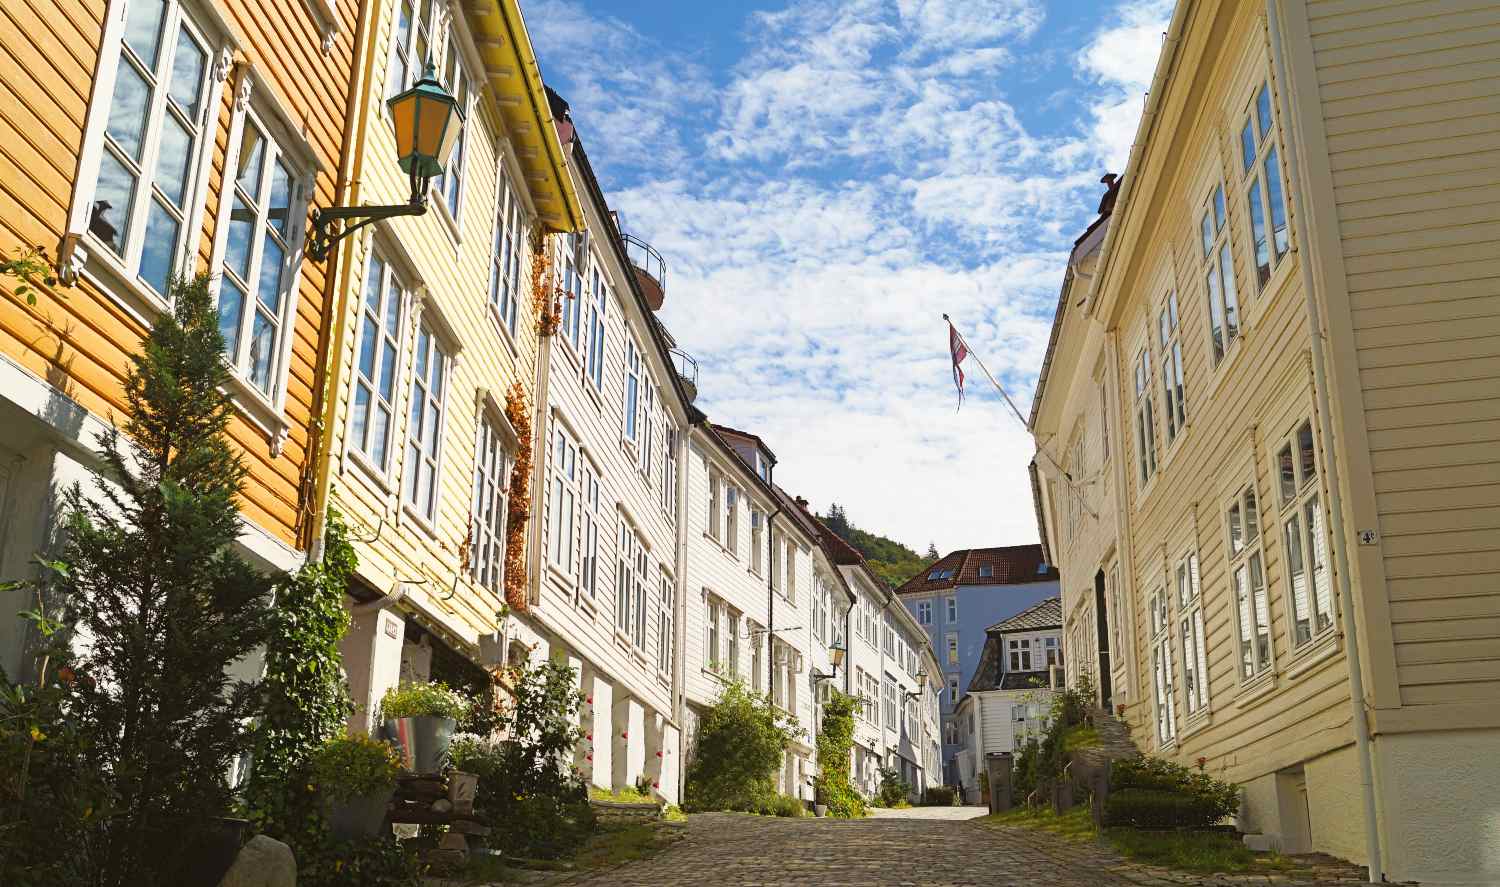 Bydeler og nabolag i Bergen sentrum - trehusbebyggelse i Sandviken